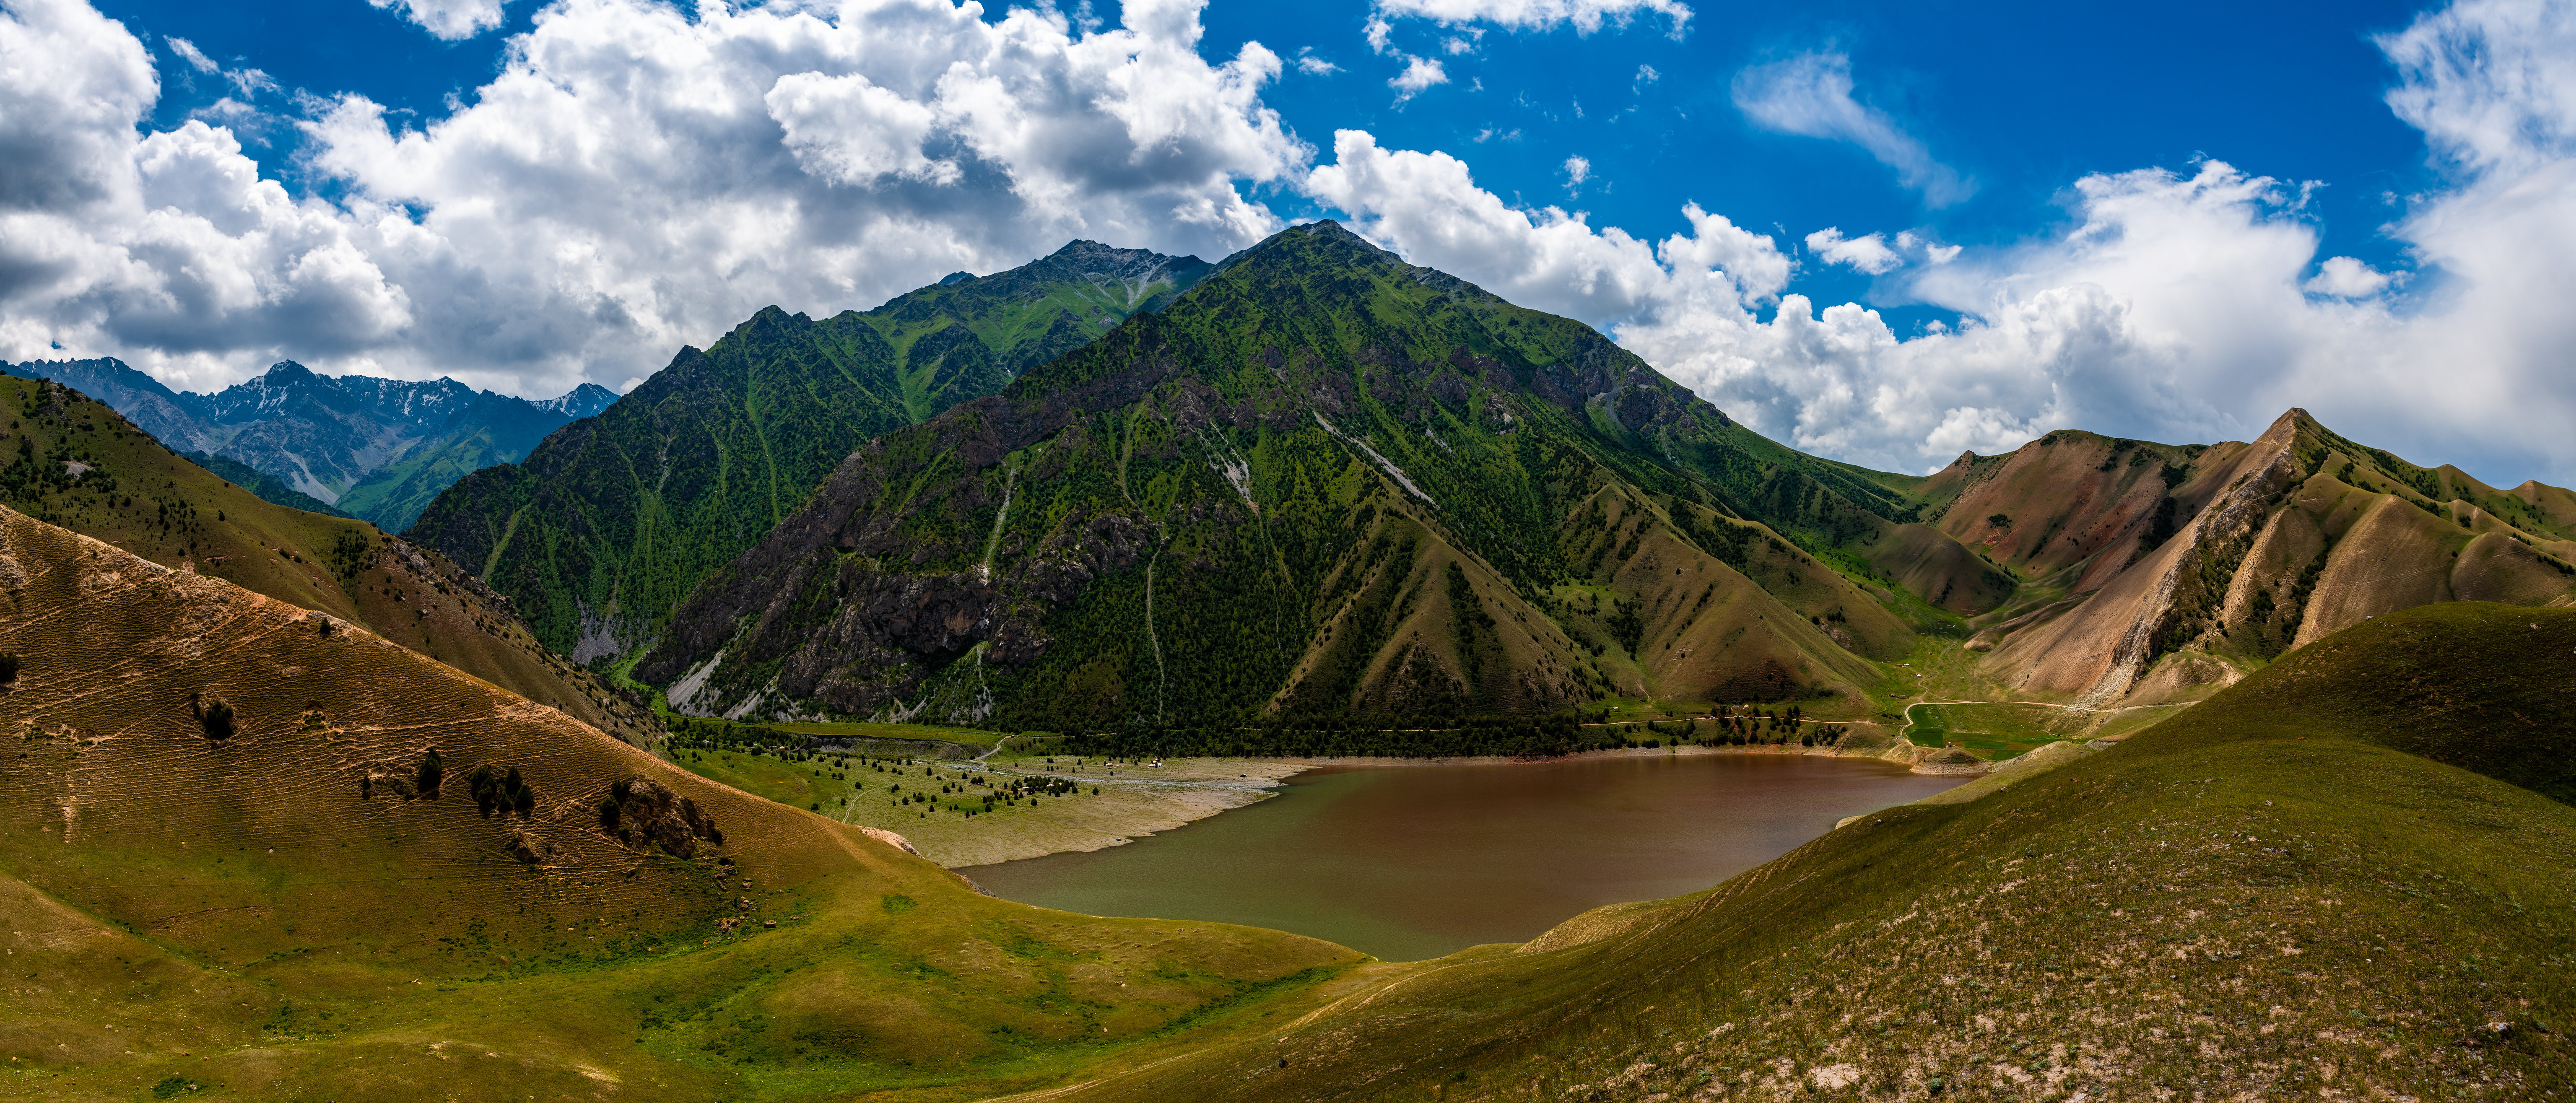 Картинки панорамная Kyrgyzstan гора Природа Облака Панорама Горы облако облачно